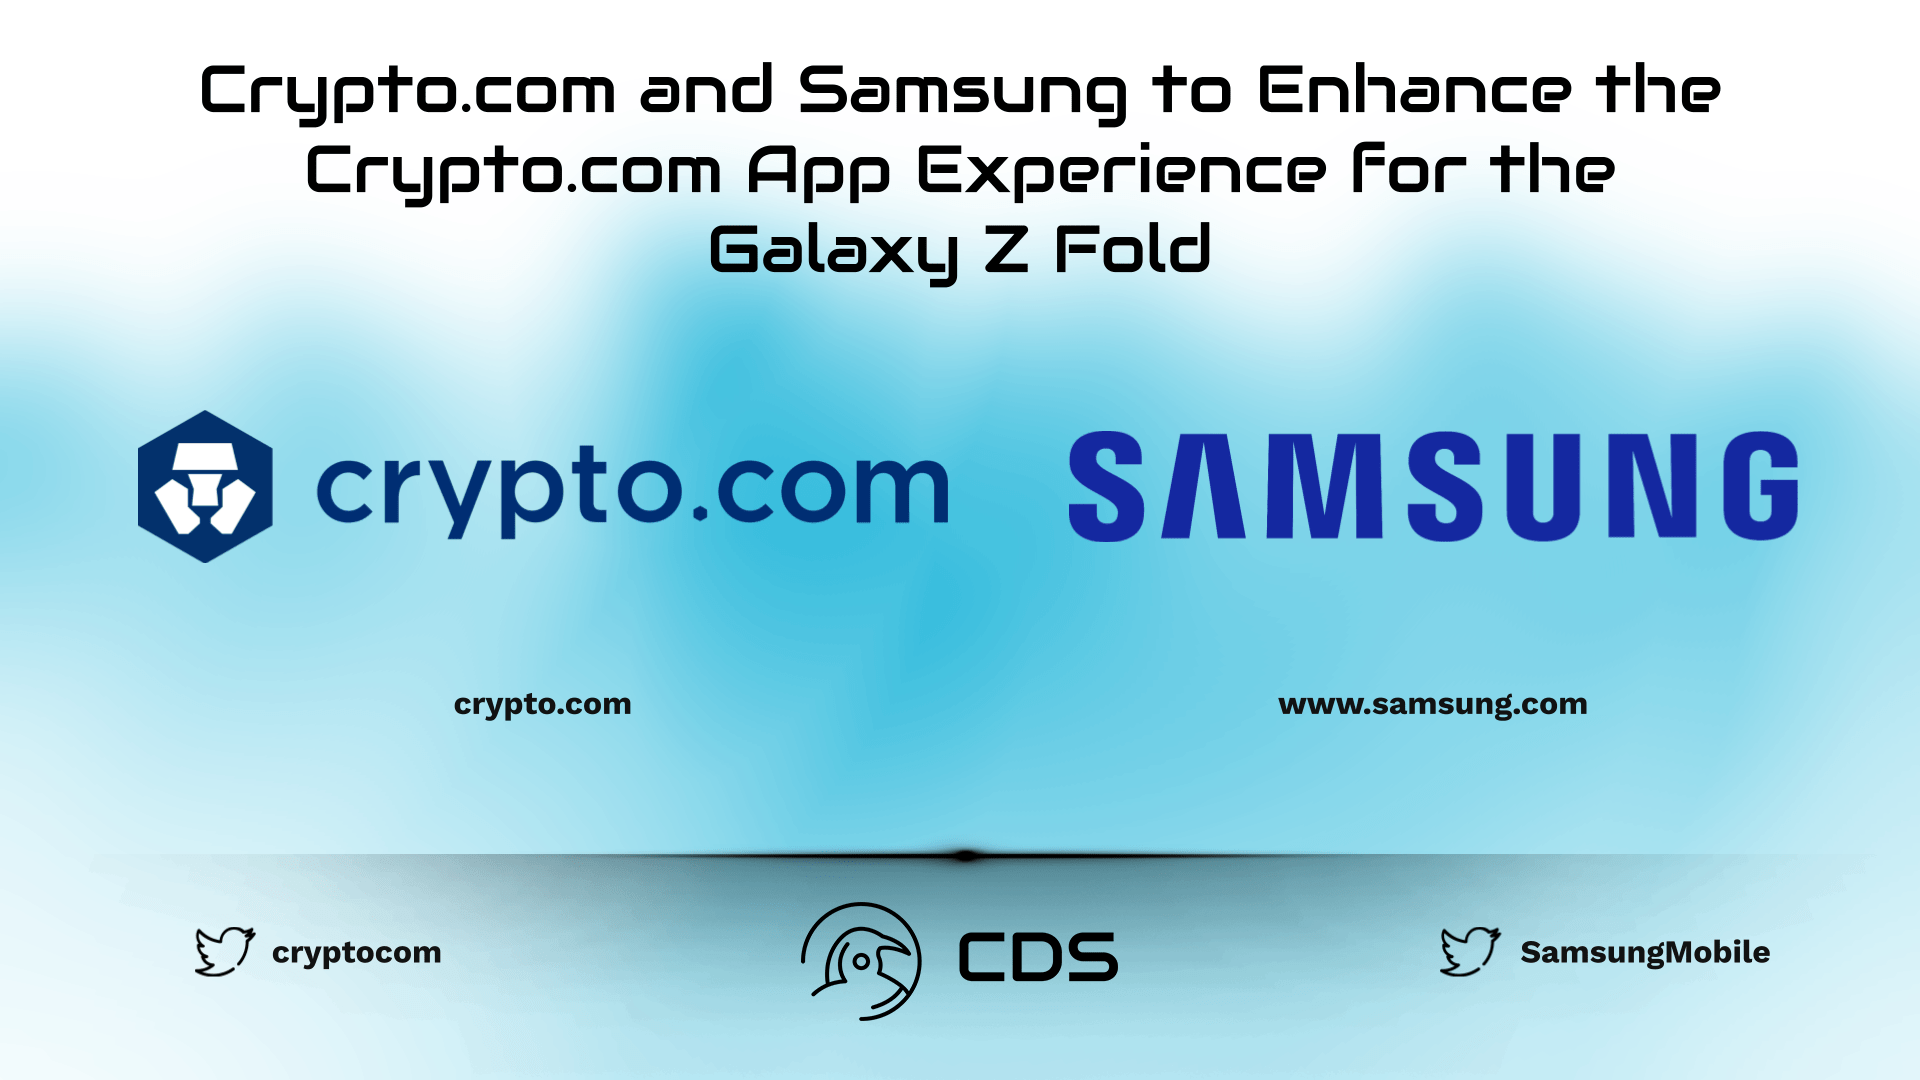 Crypto.com and Samsung to Enhance the Crypto.com App Experience for the Galaxy Z Fold